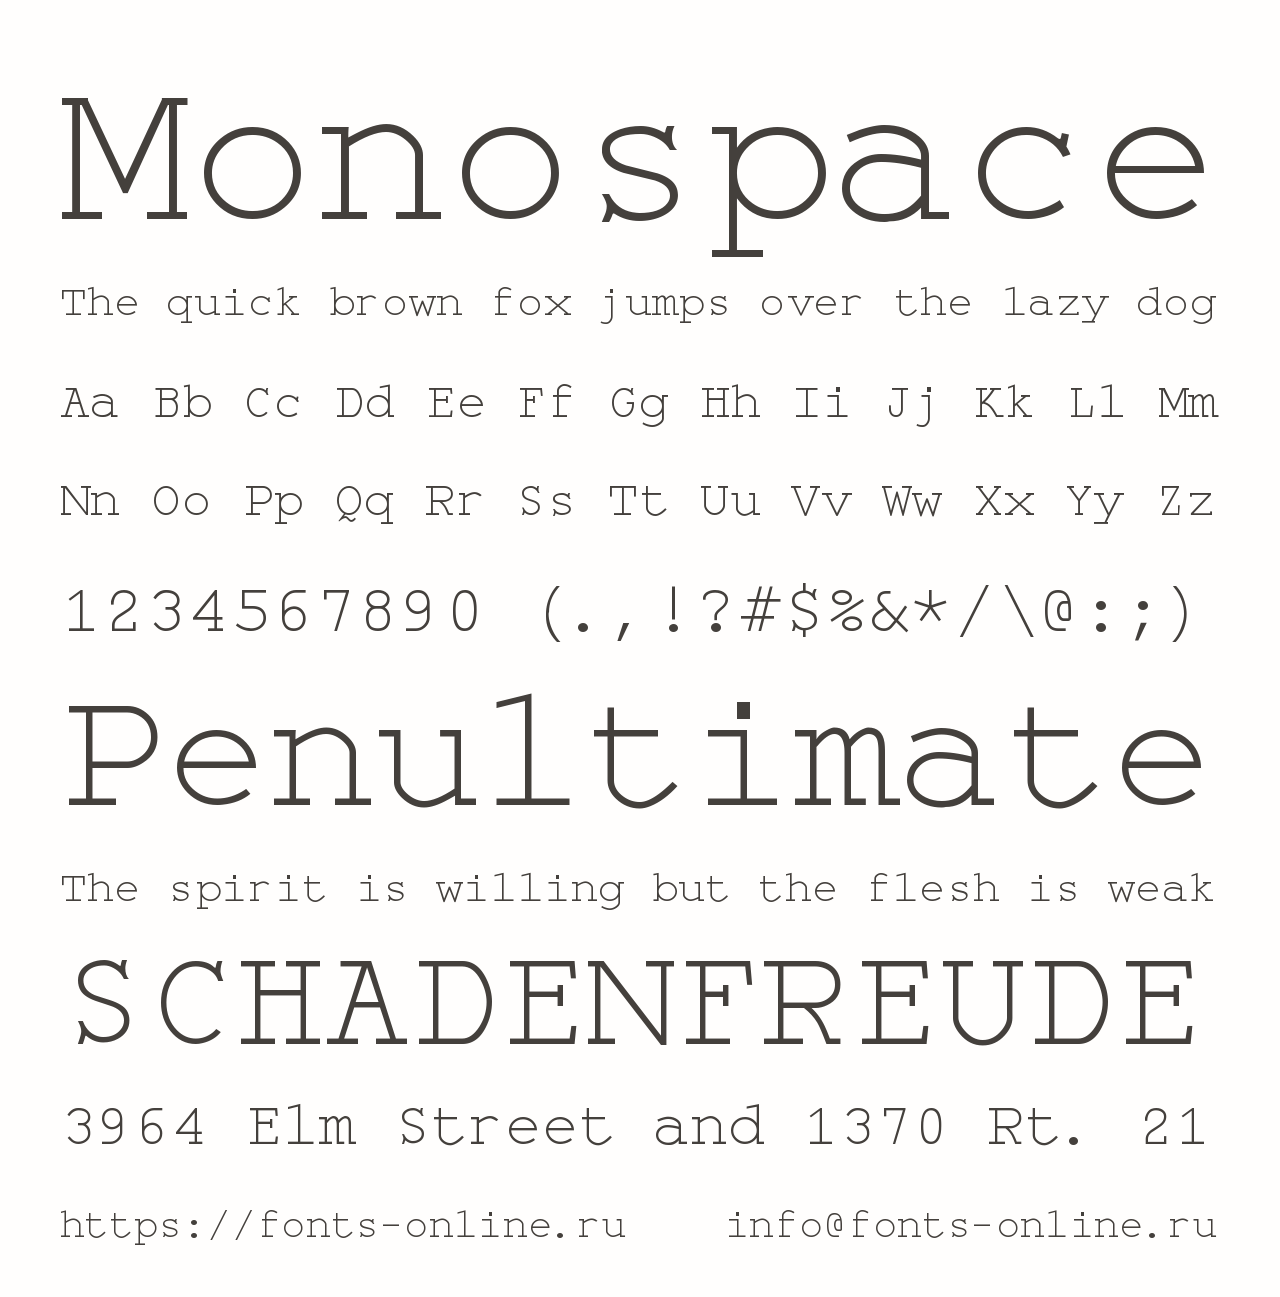 Шрифт Monospace